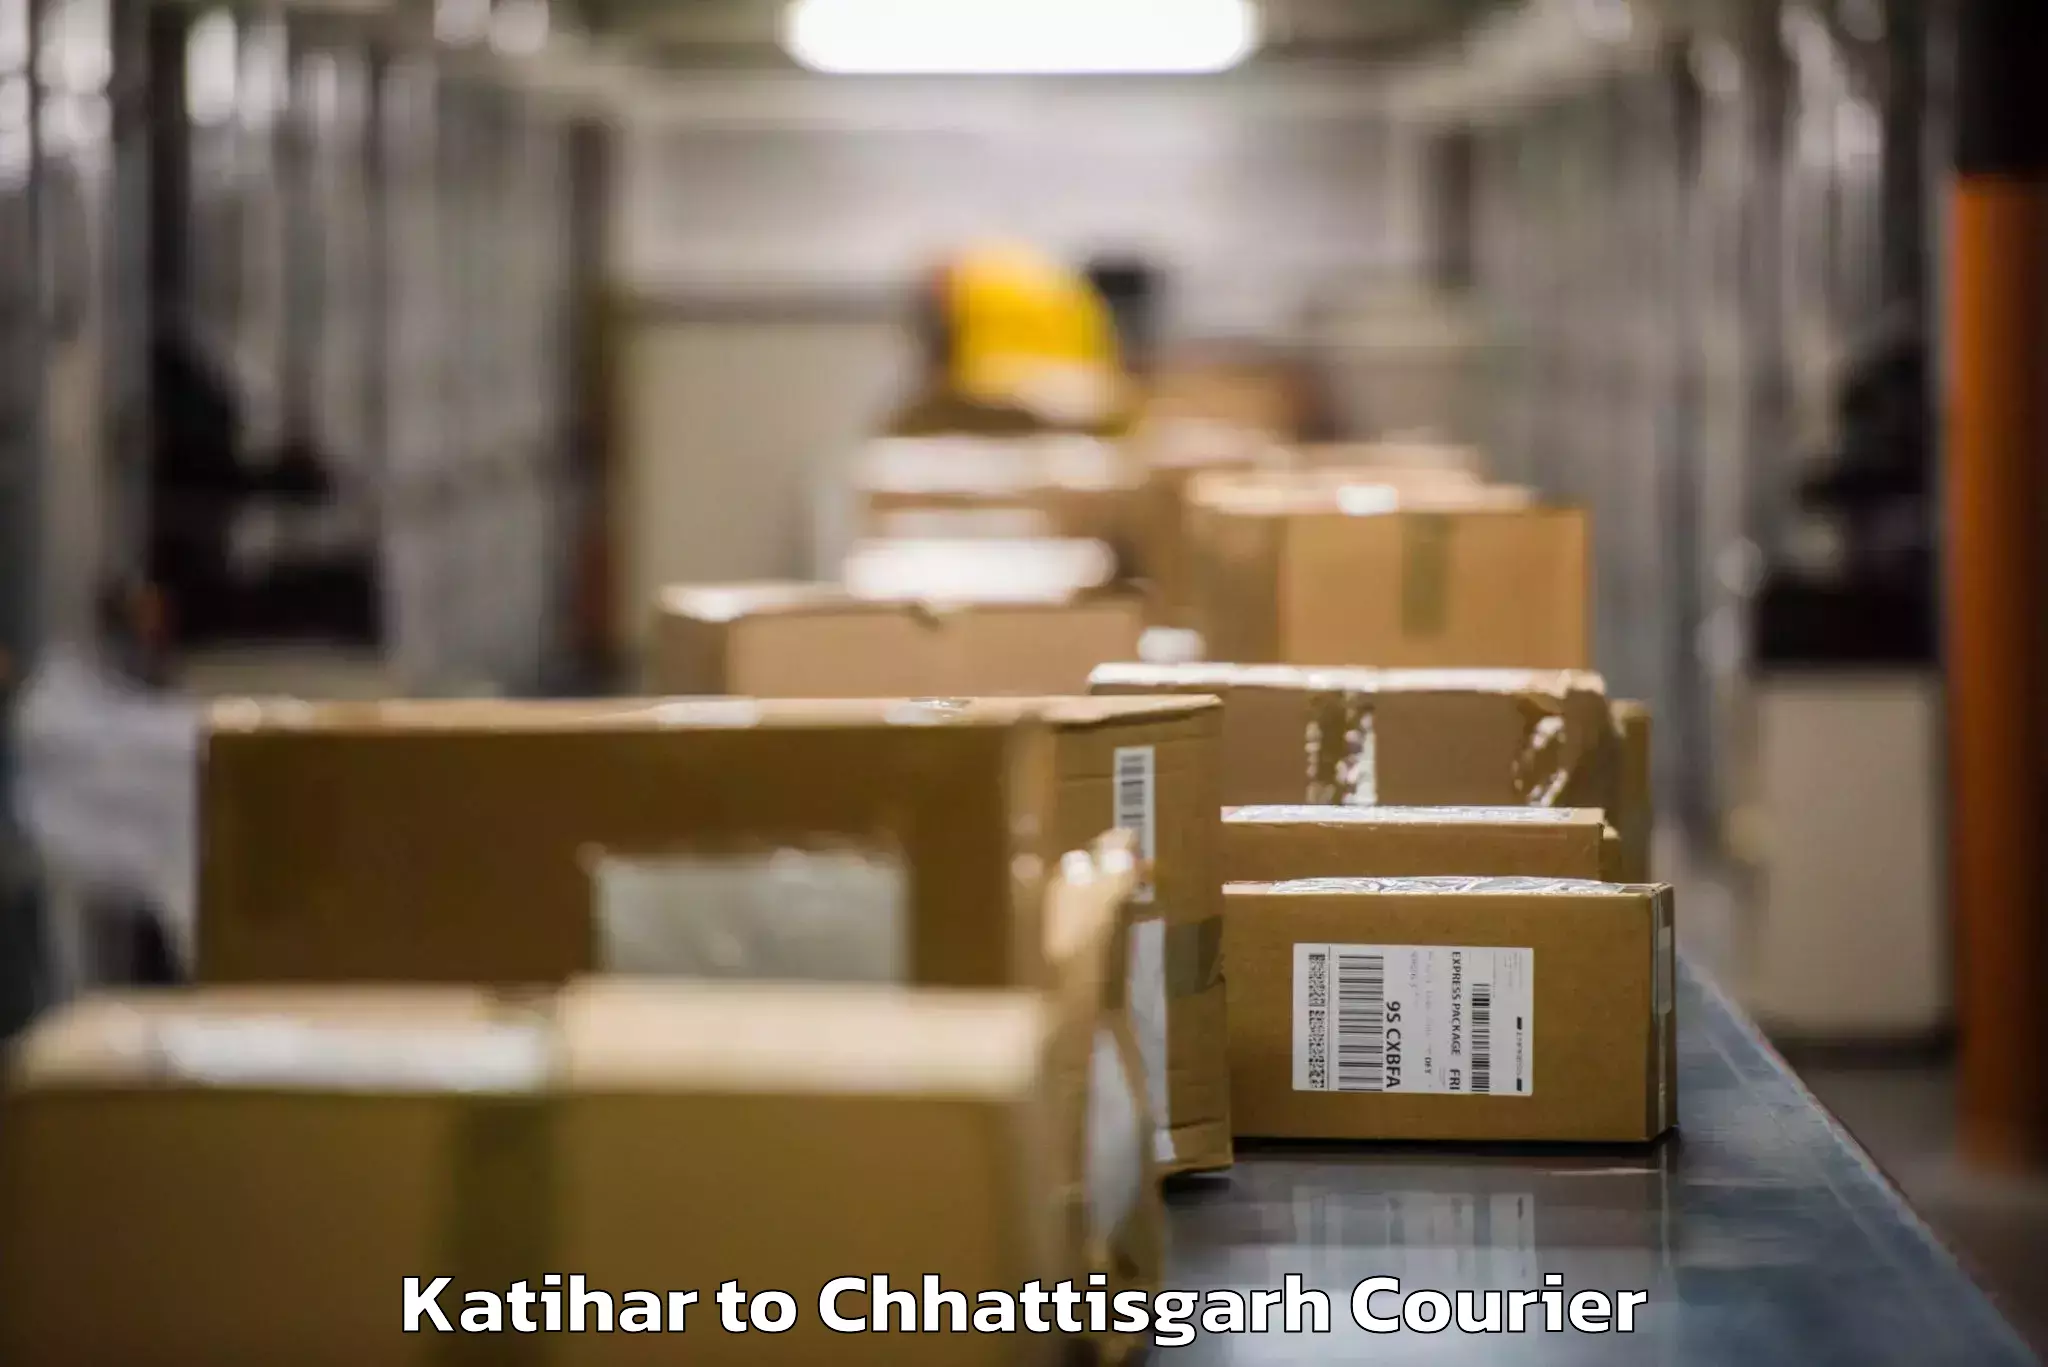 Baggage transport management Katihar to Sakti